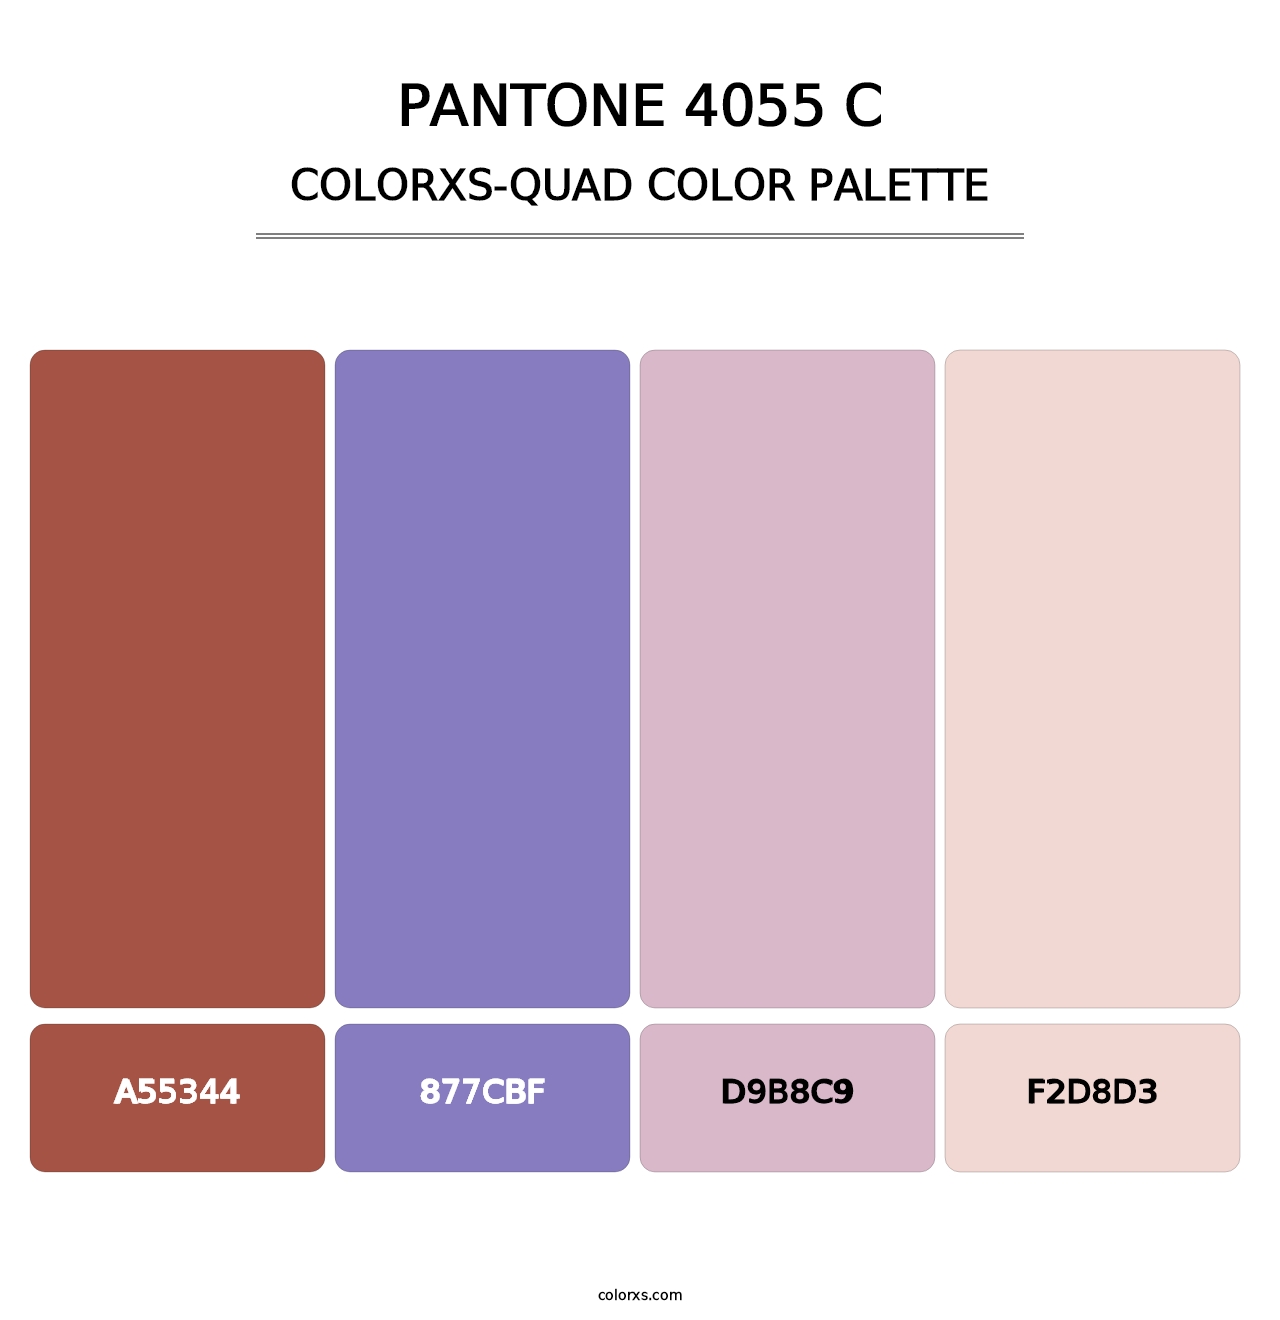 PANTONE 4055 C - Colorxs Quad Palette